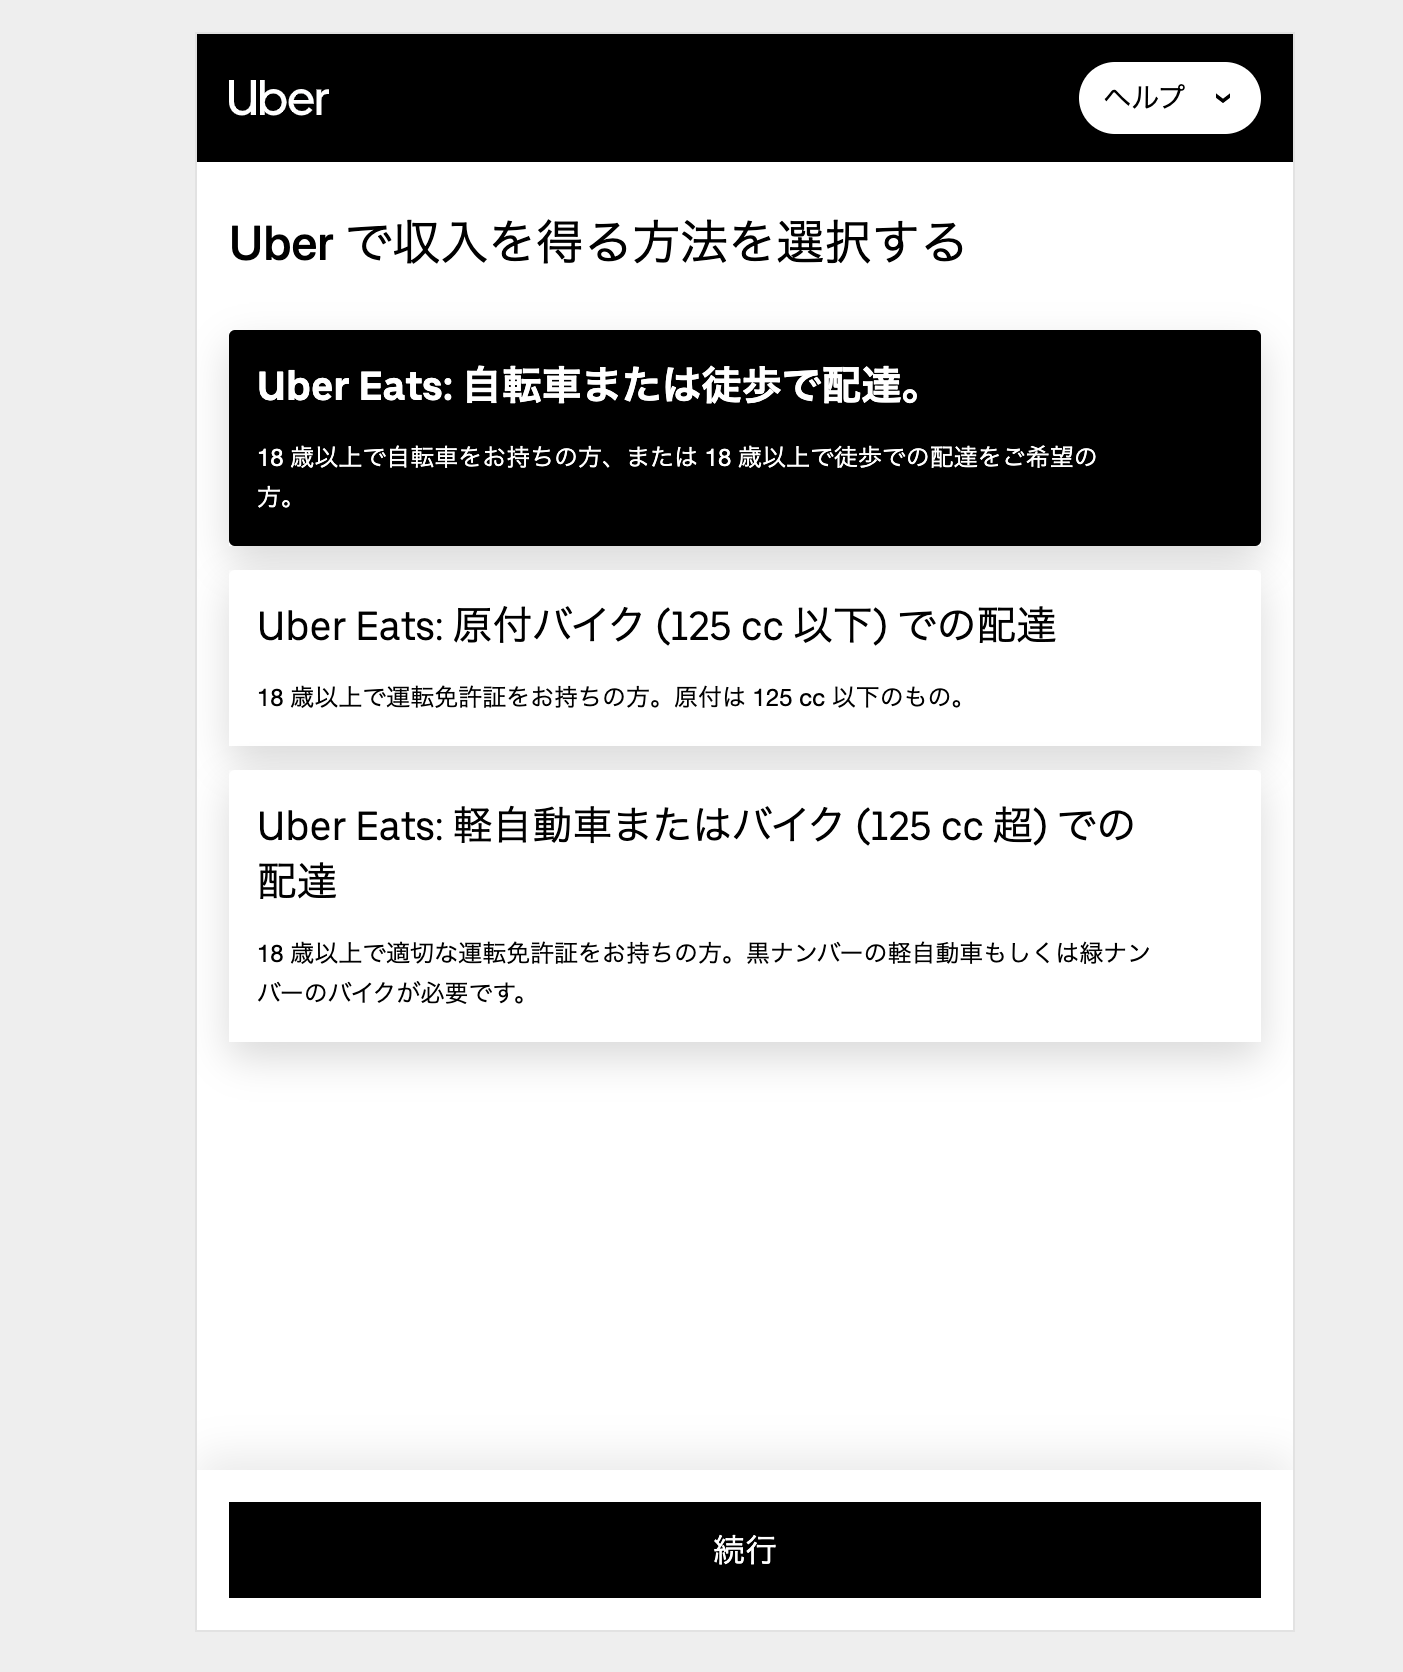 Uber Eats の登録画面
配達手段を選択する画面